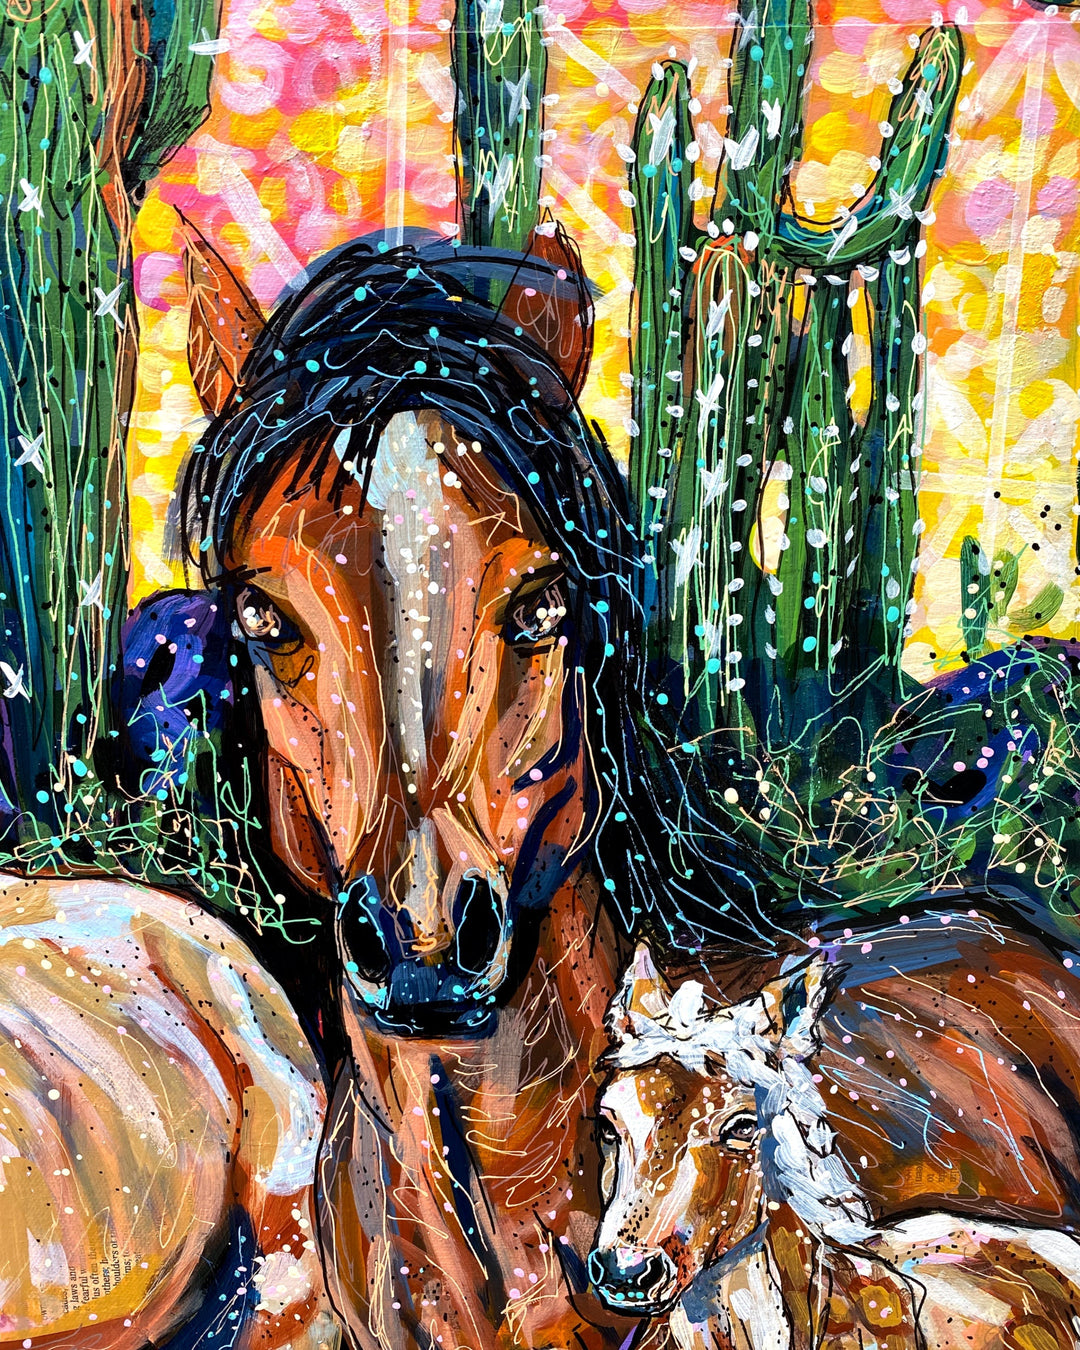 Southwestern Tile & Wild Horses - Heather Freitas 